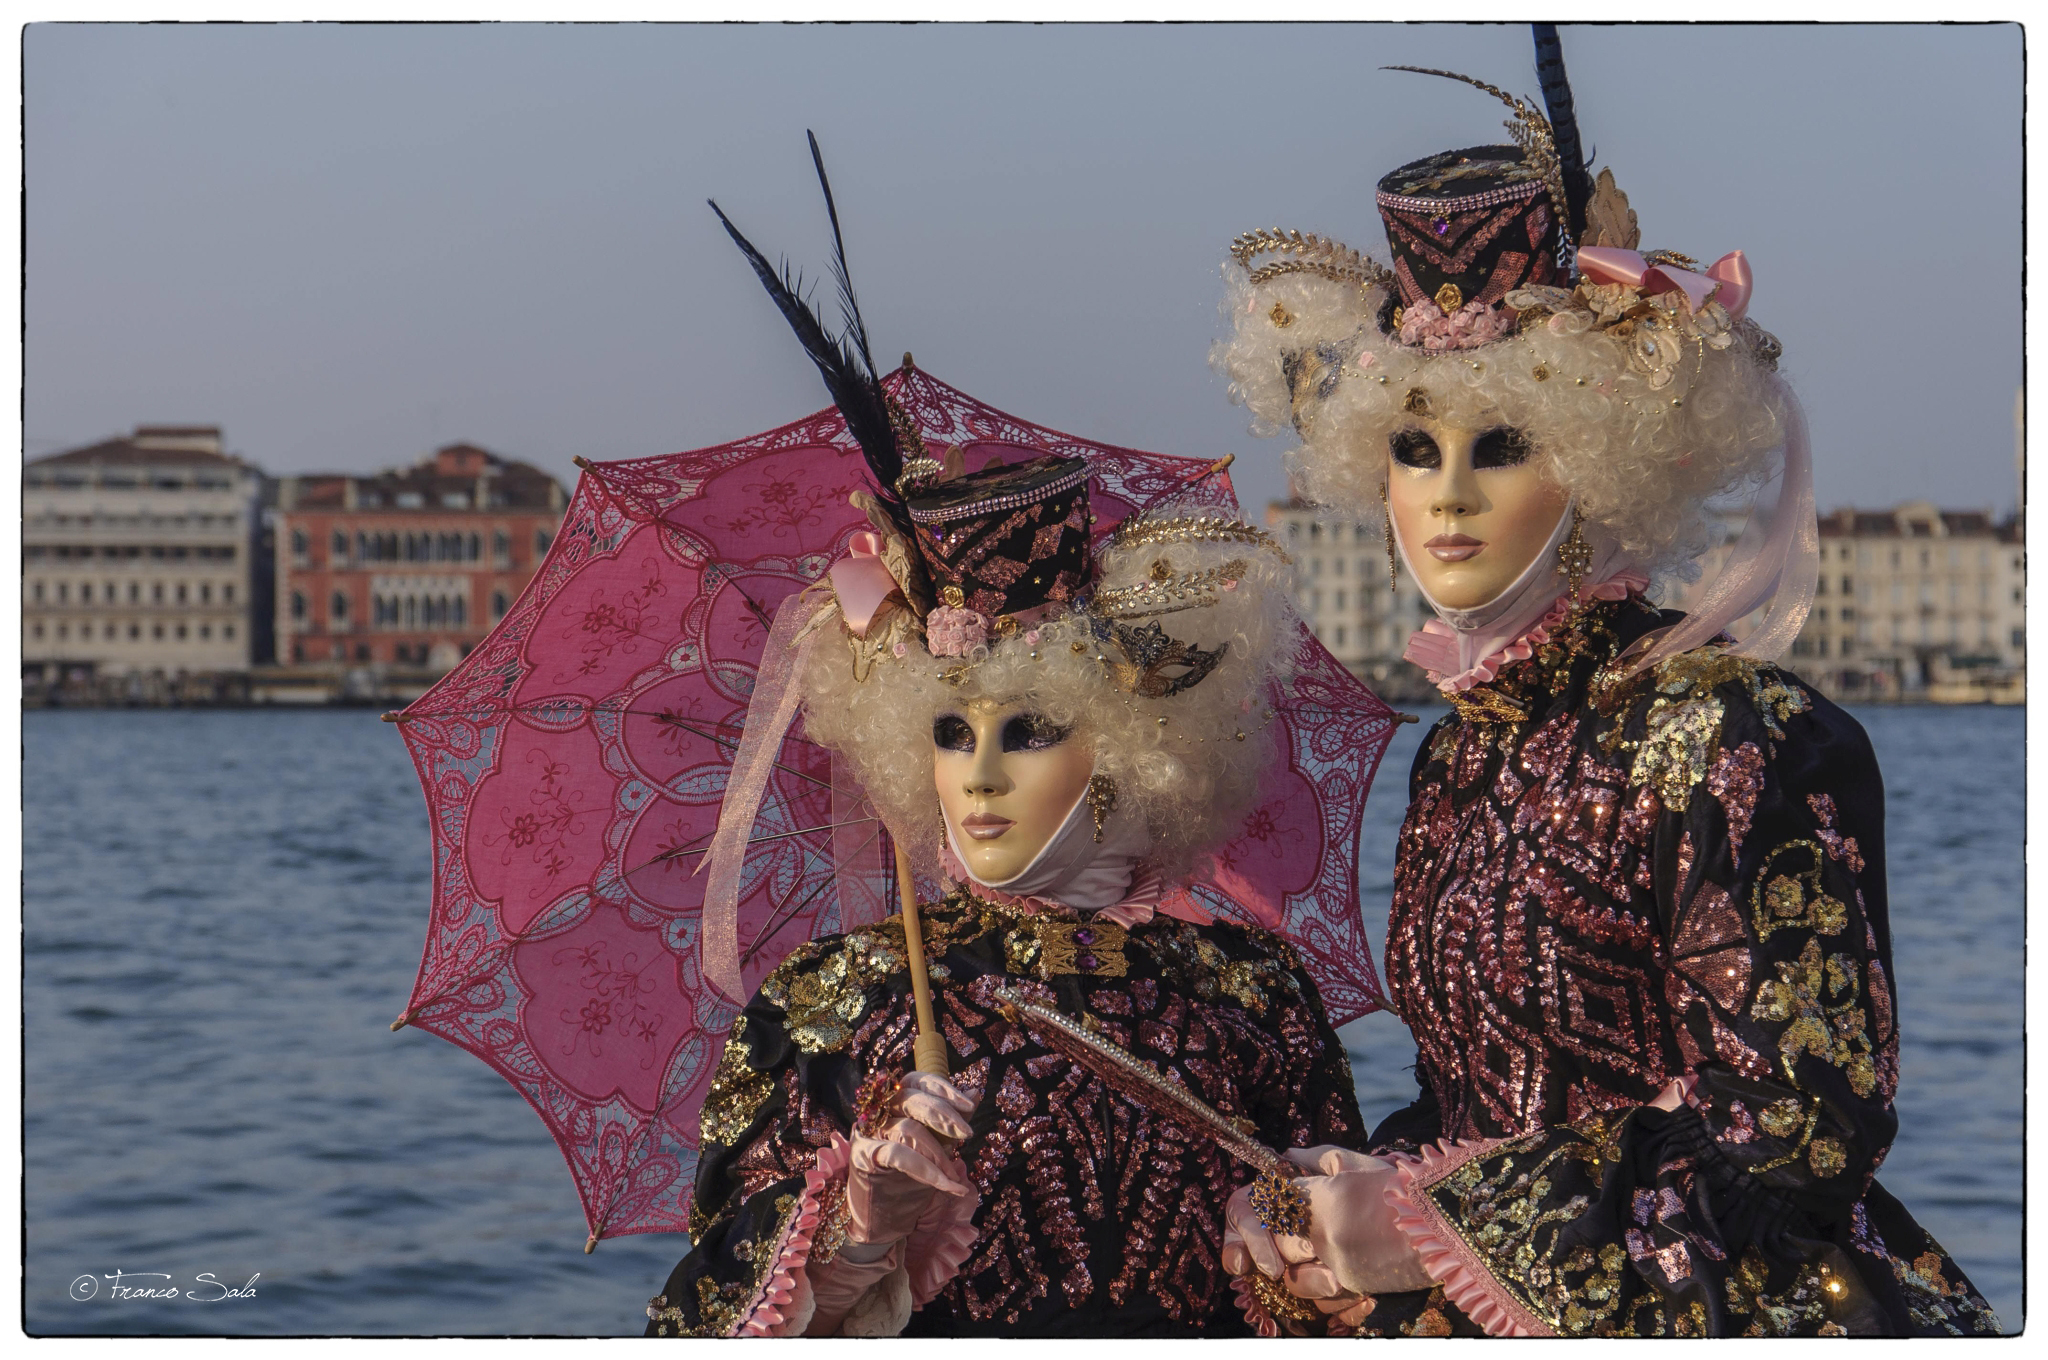 Carnevale Venezia...